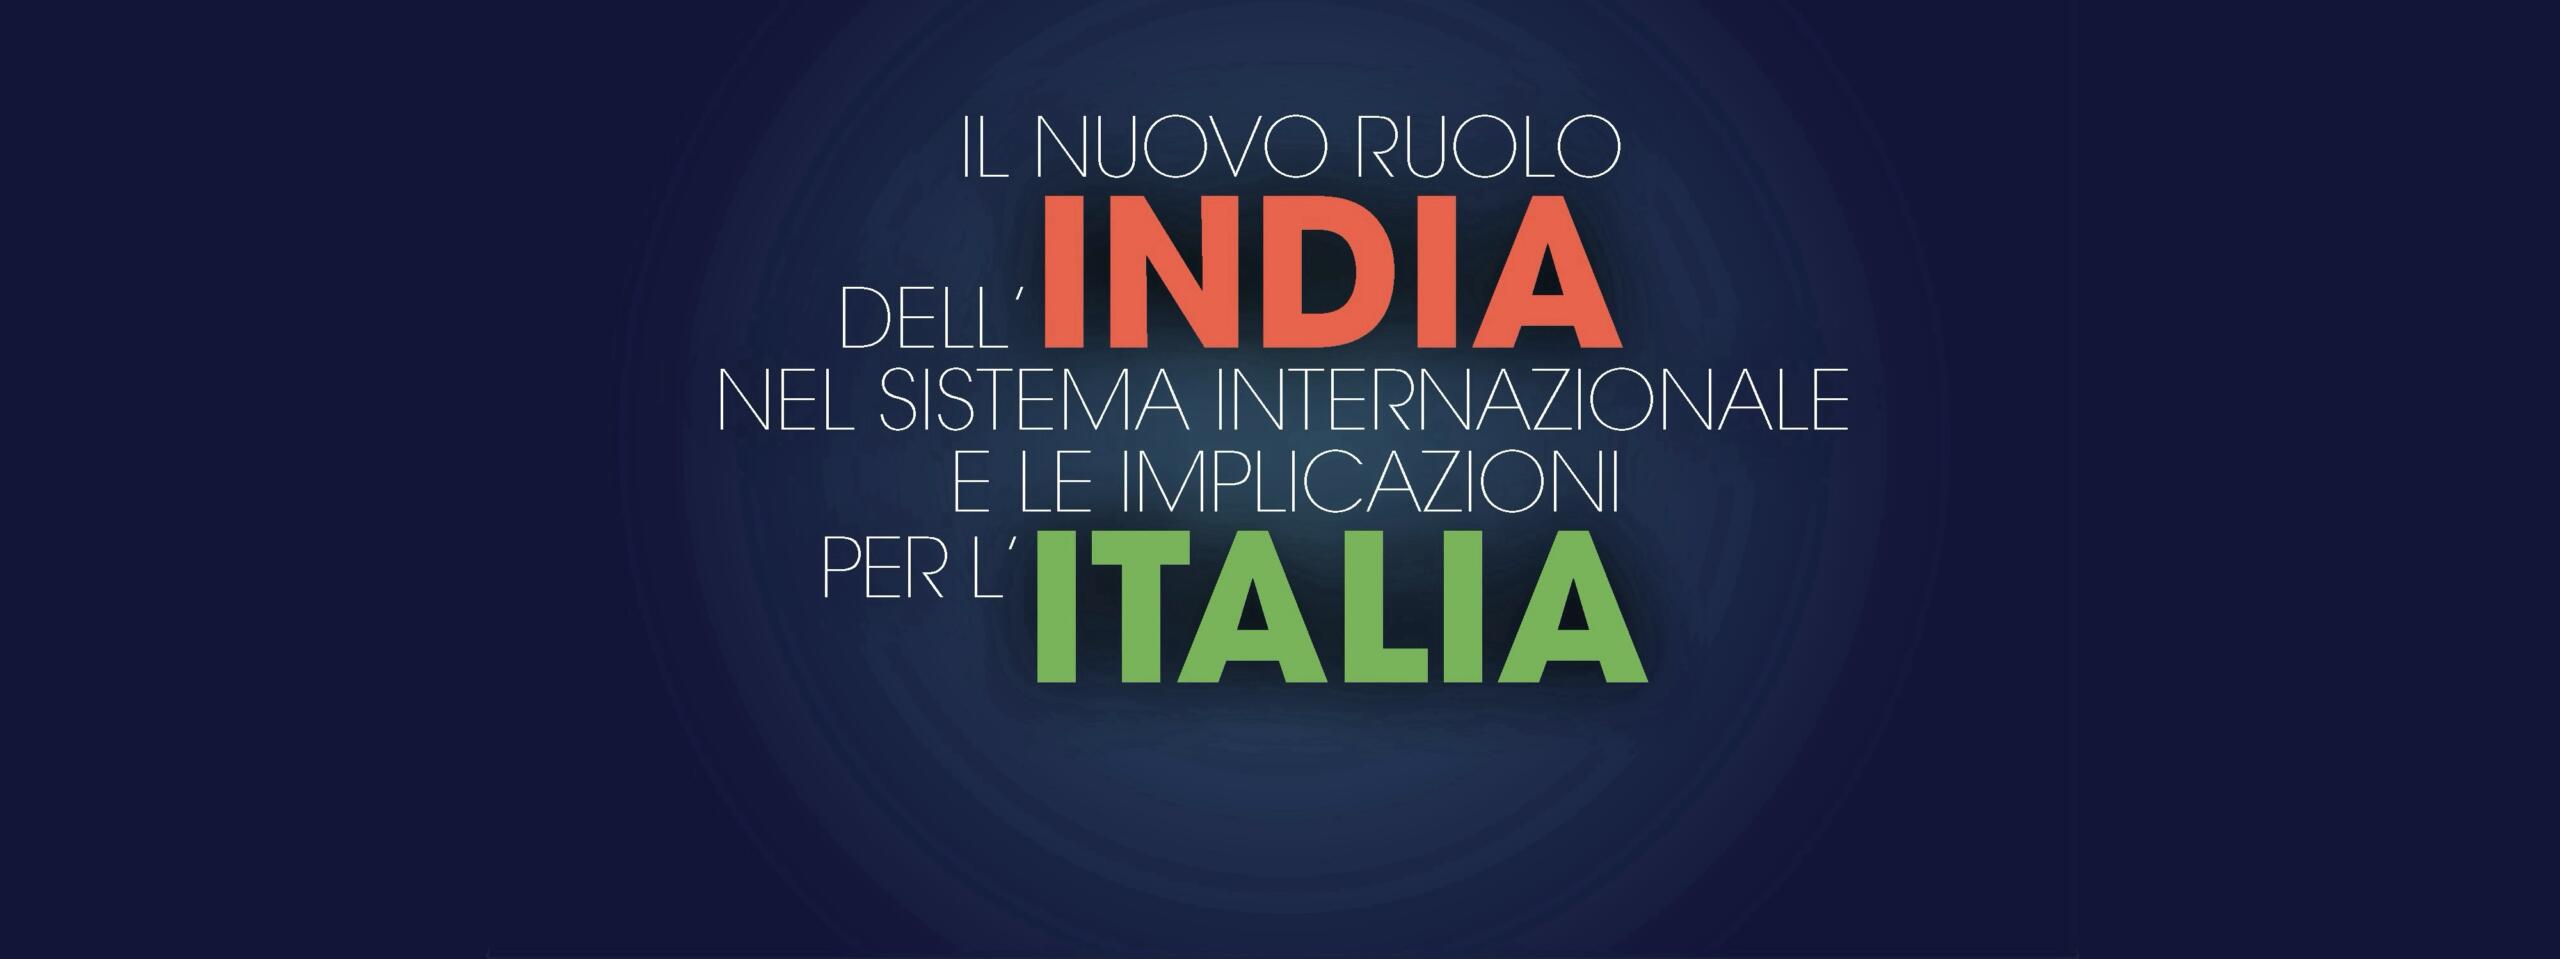 Il nuovo ruolo dell’India nel sistema internazionale e le implicazioni per l’Italia